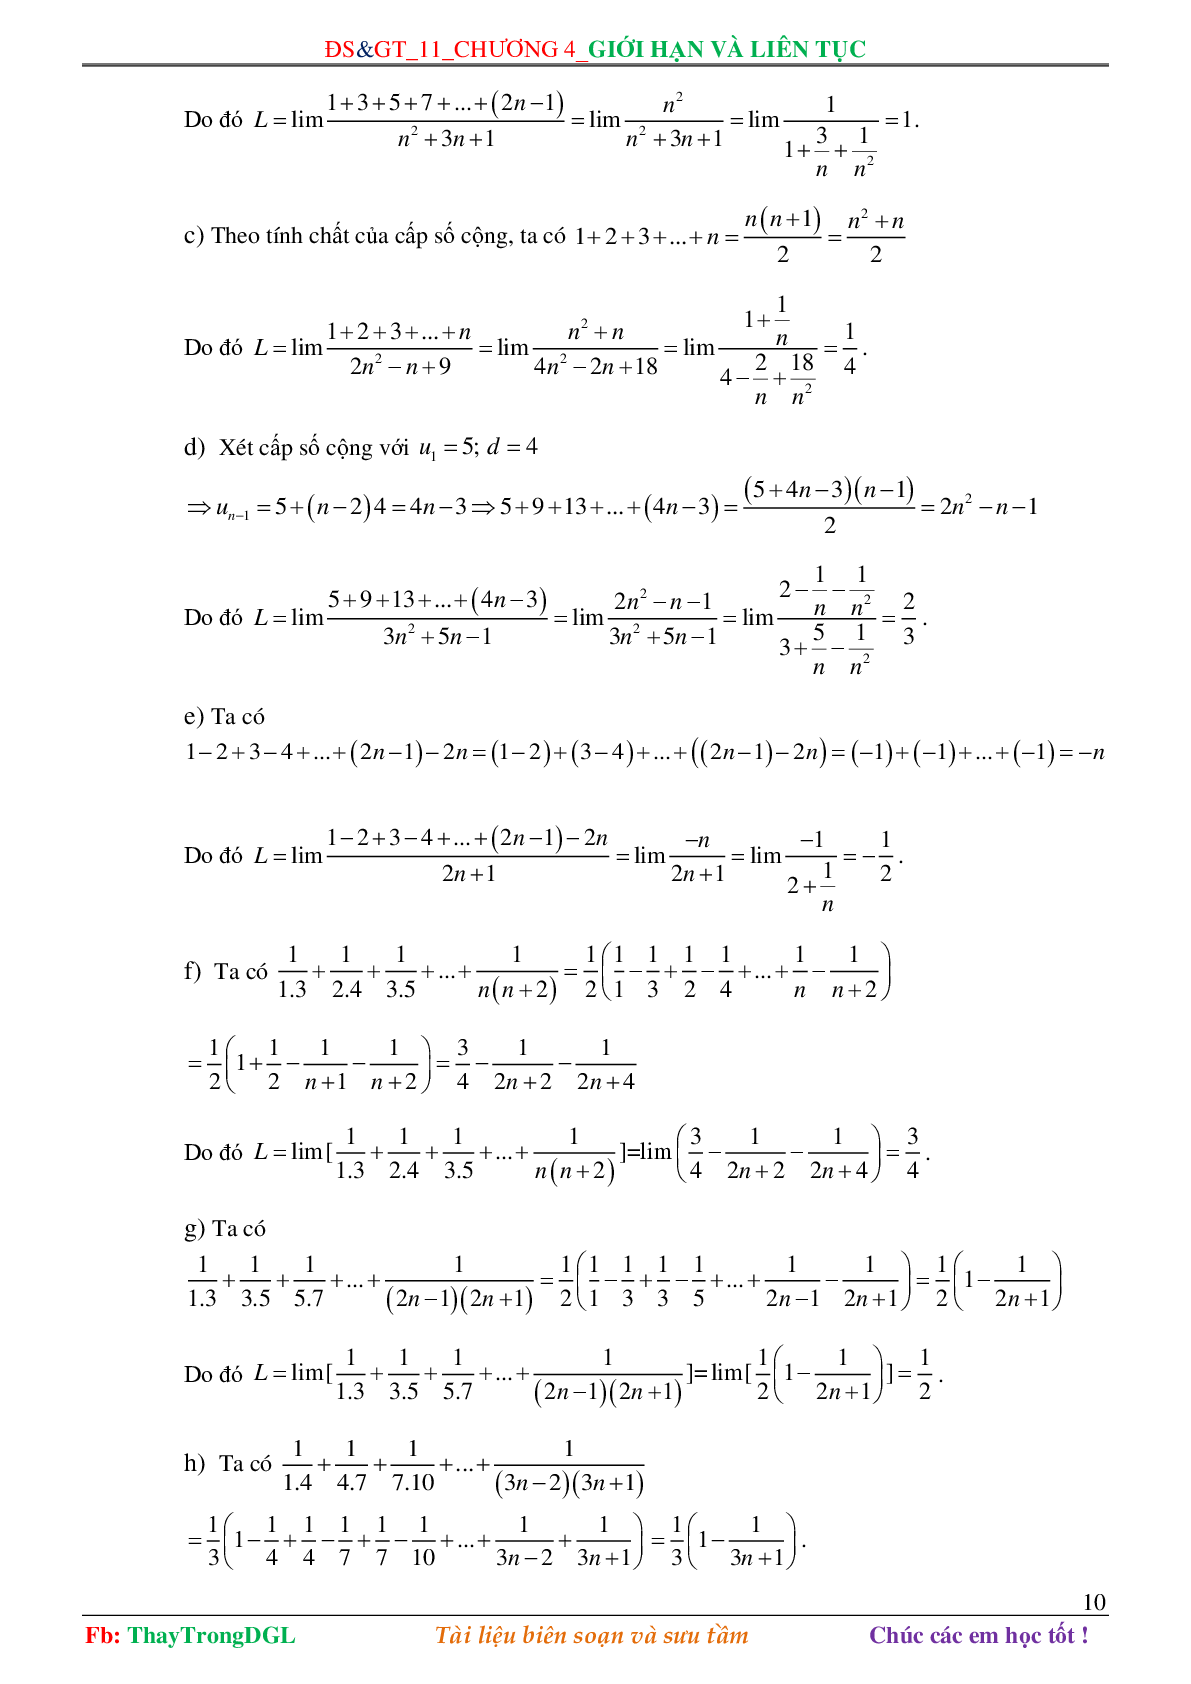 Các dạng toán về Giới hạn và liên tục (có bài tập kèm theo) (trang 10)